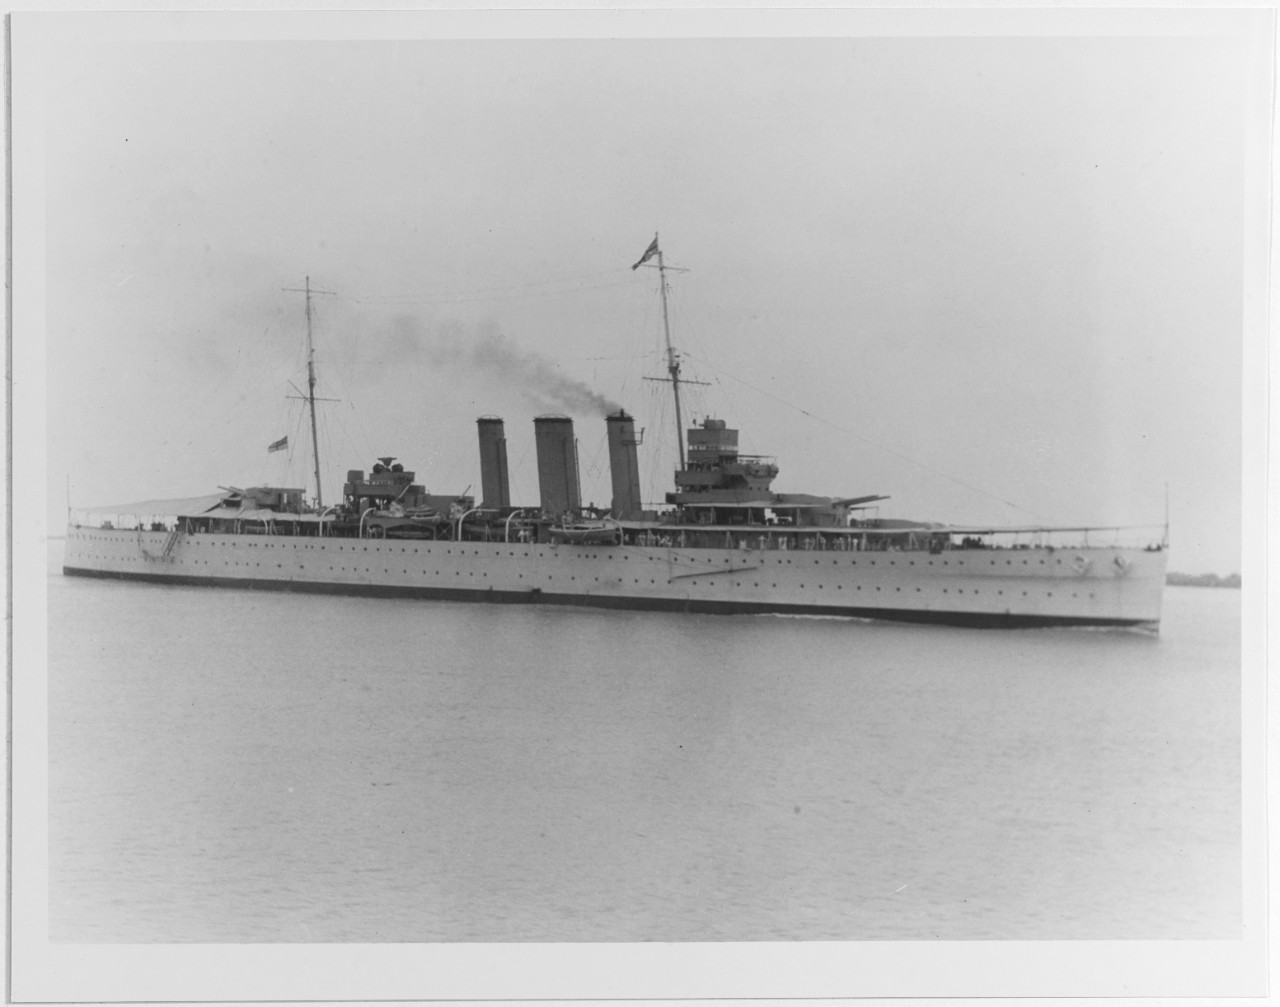 SUFFOLK (British heavy cruiser, 1925)